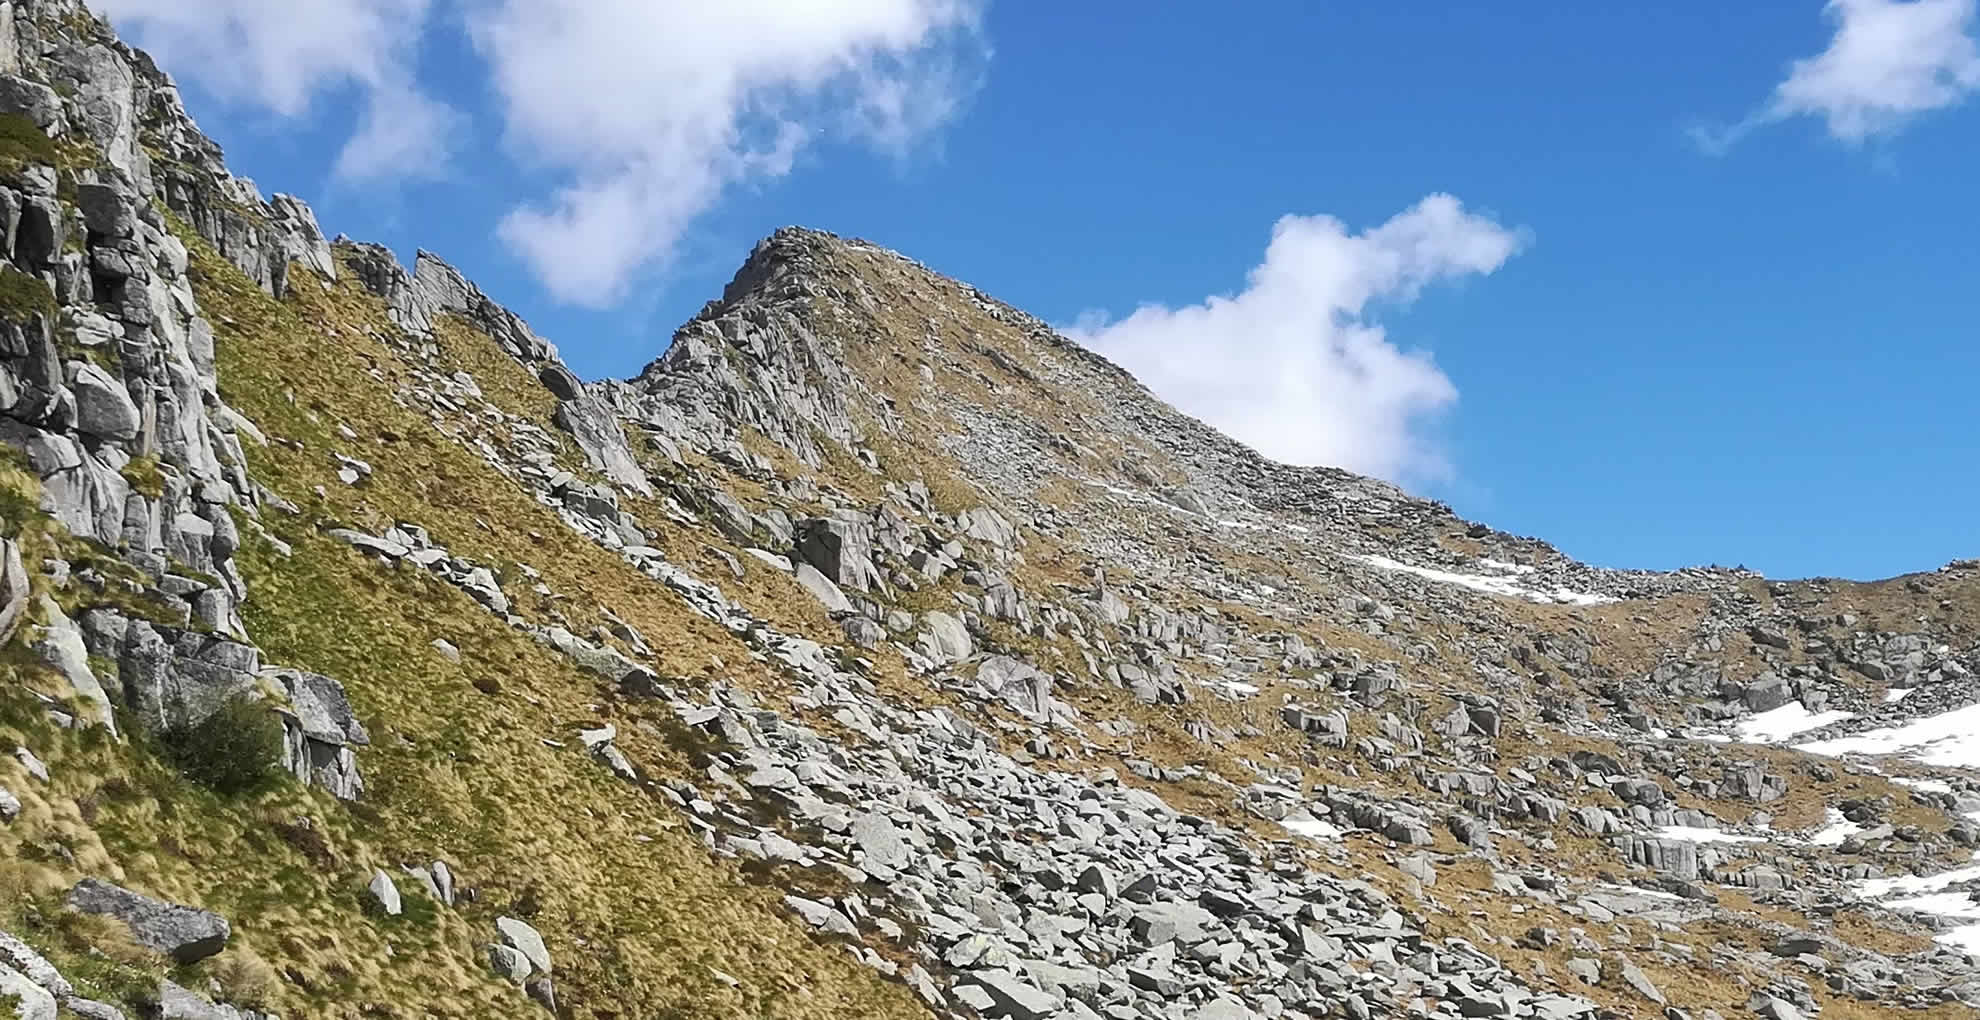 Vetta del Mt. Boia con la cresta sommitale